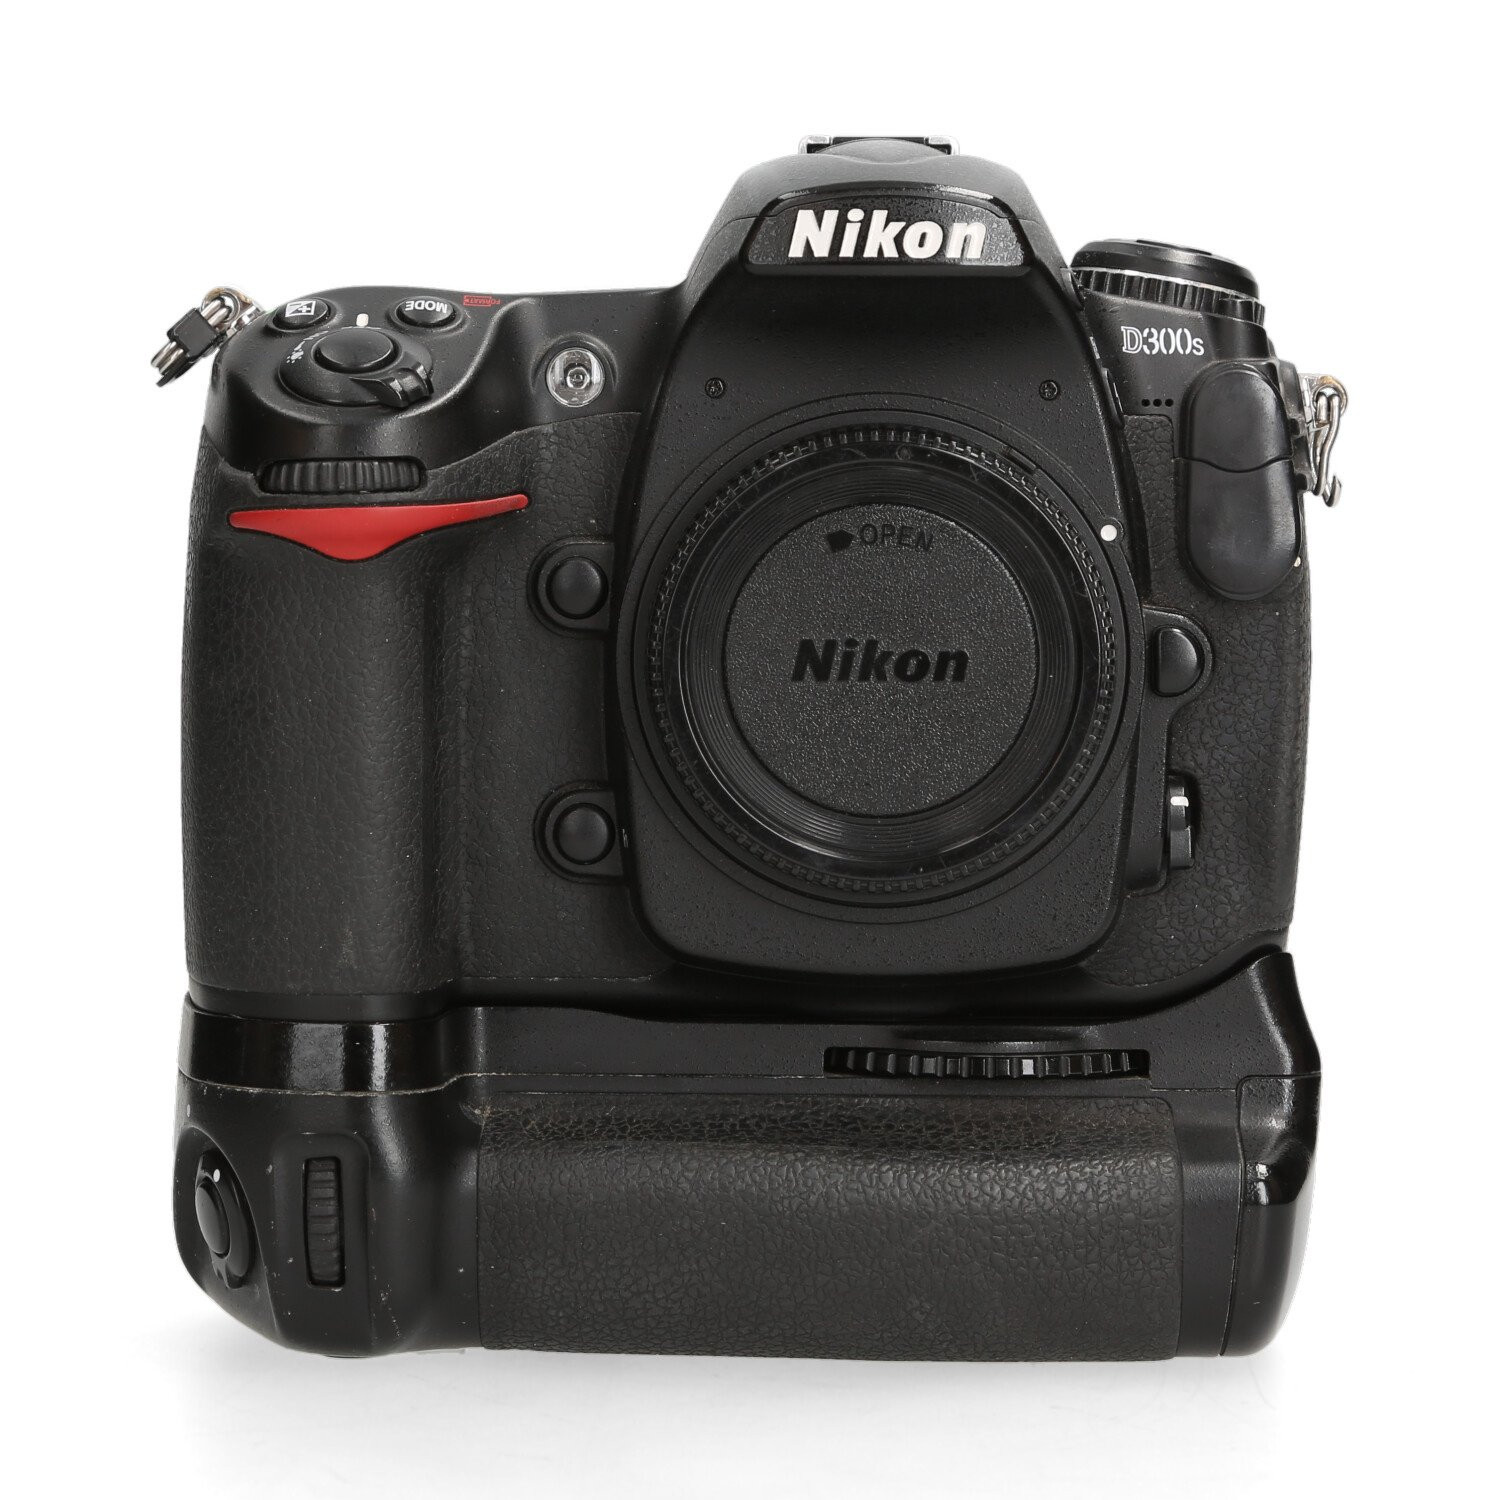 Nikon Nikon D300s - 18.216 kliks + Grip